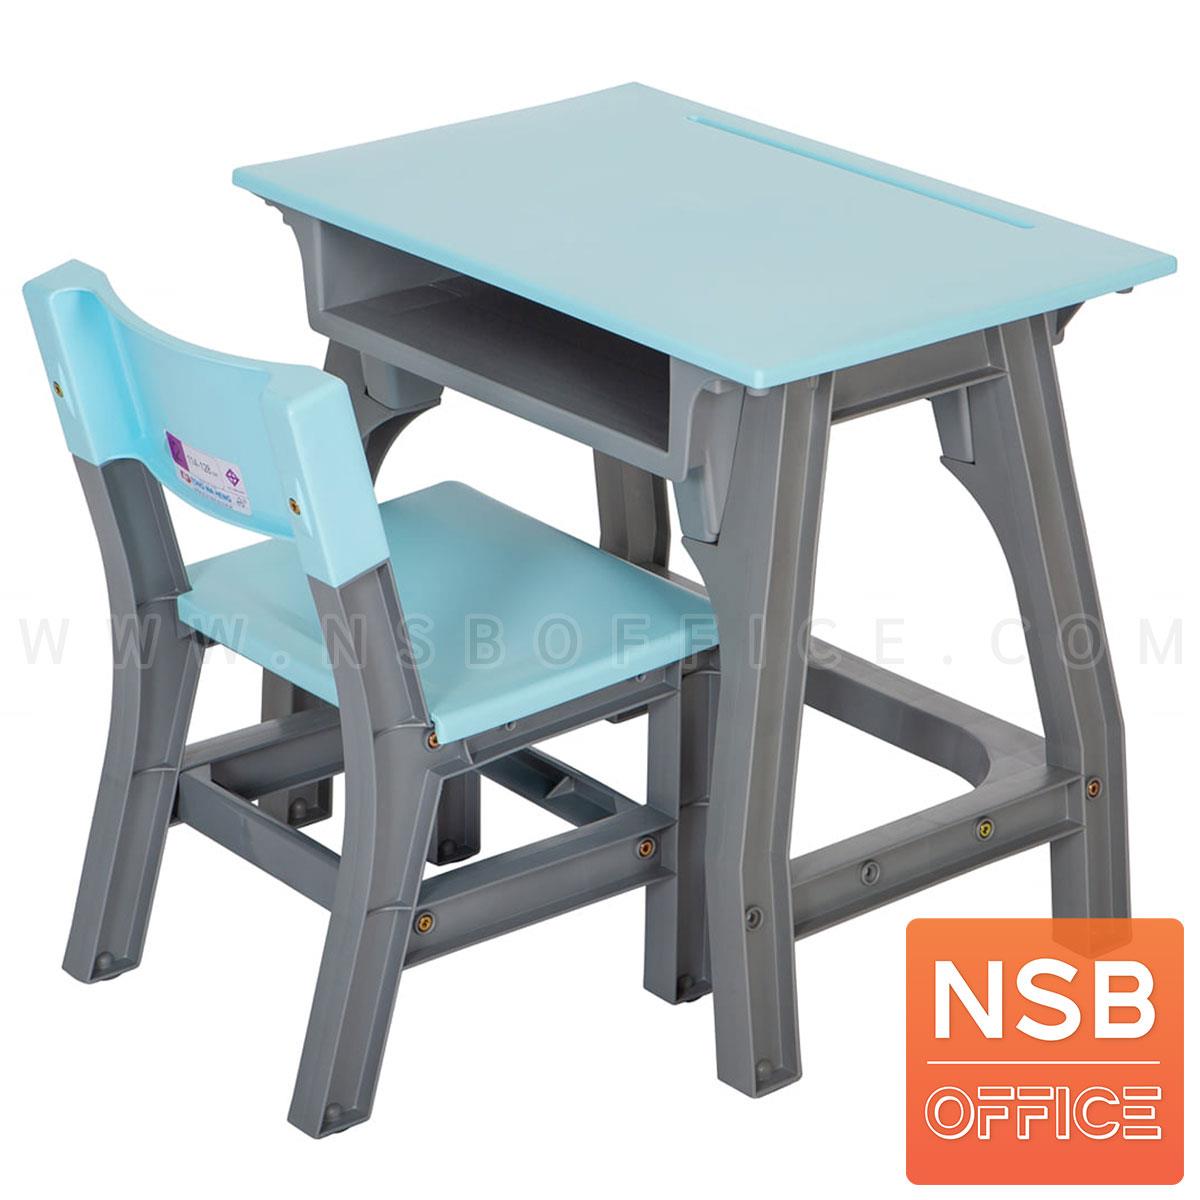 ชุดโต๊ะและเก้าอี้นักเรียน รุ่น Absolute (แอ็ปโซลูต)  ระดับชั้นอนุบาล ขาพลาสติก